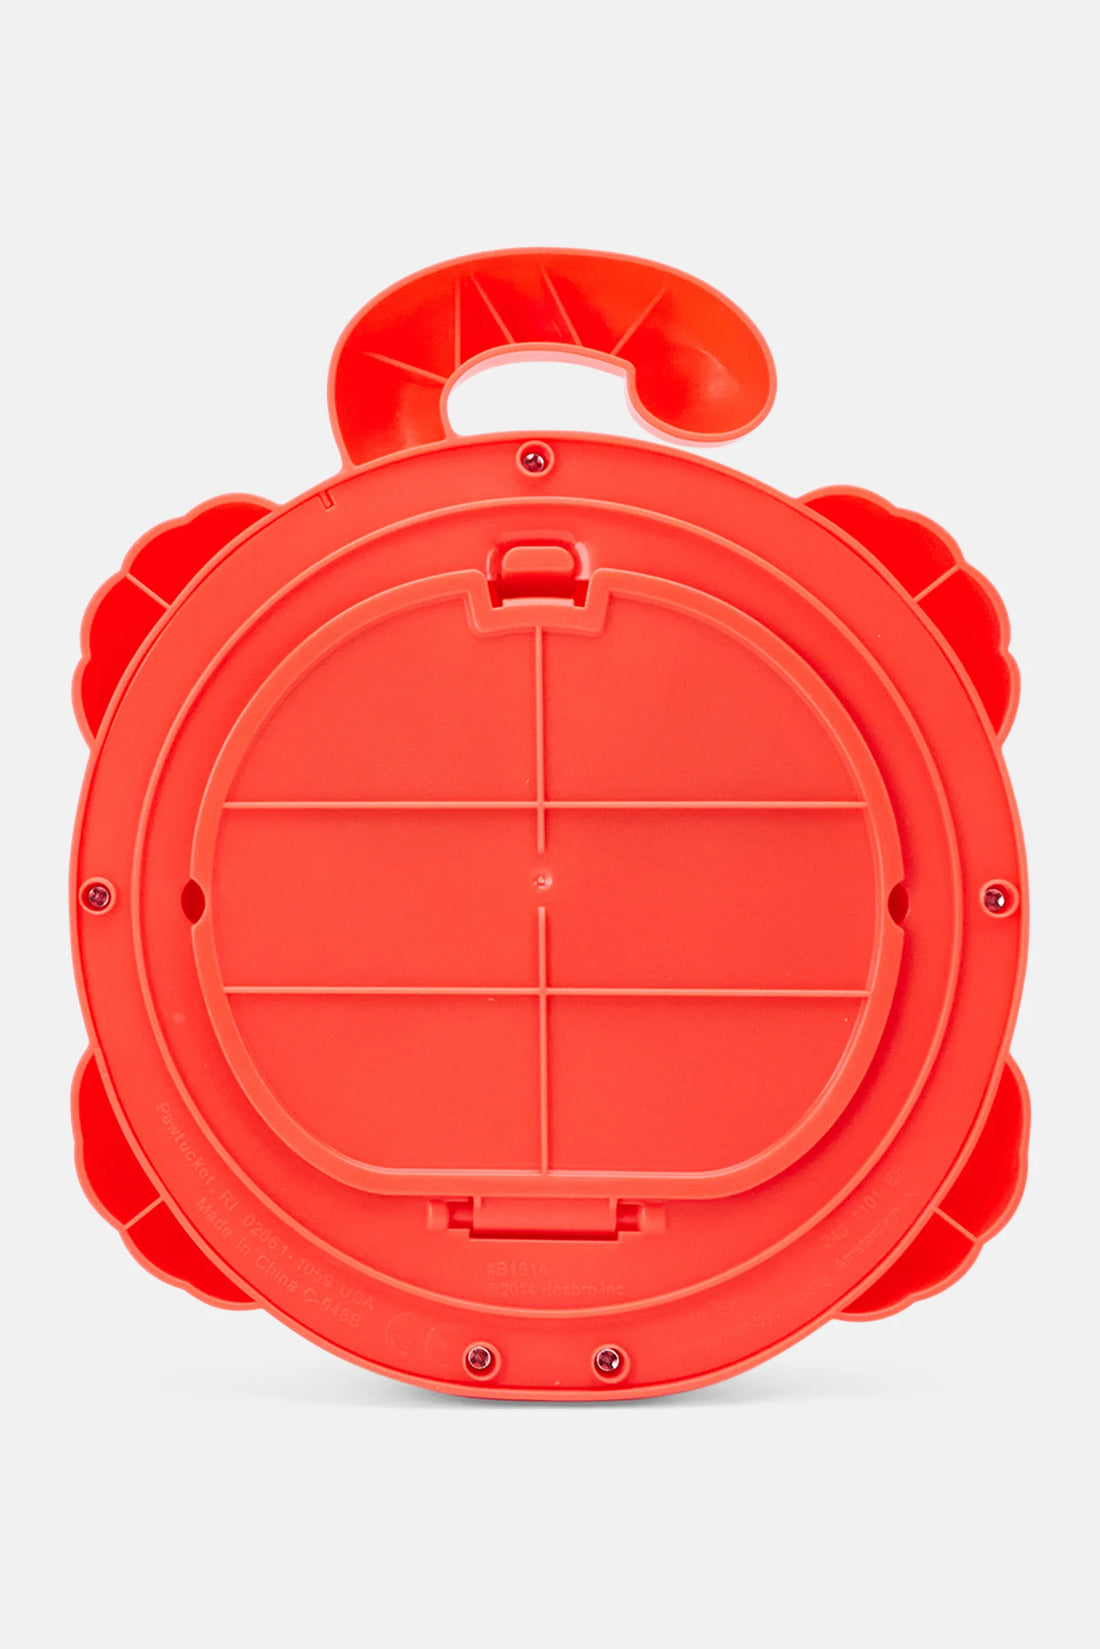 Spin Master Playskool Pop Up Shape Sorter Toy Orange/Red